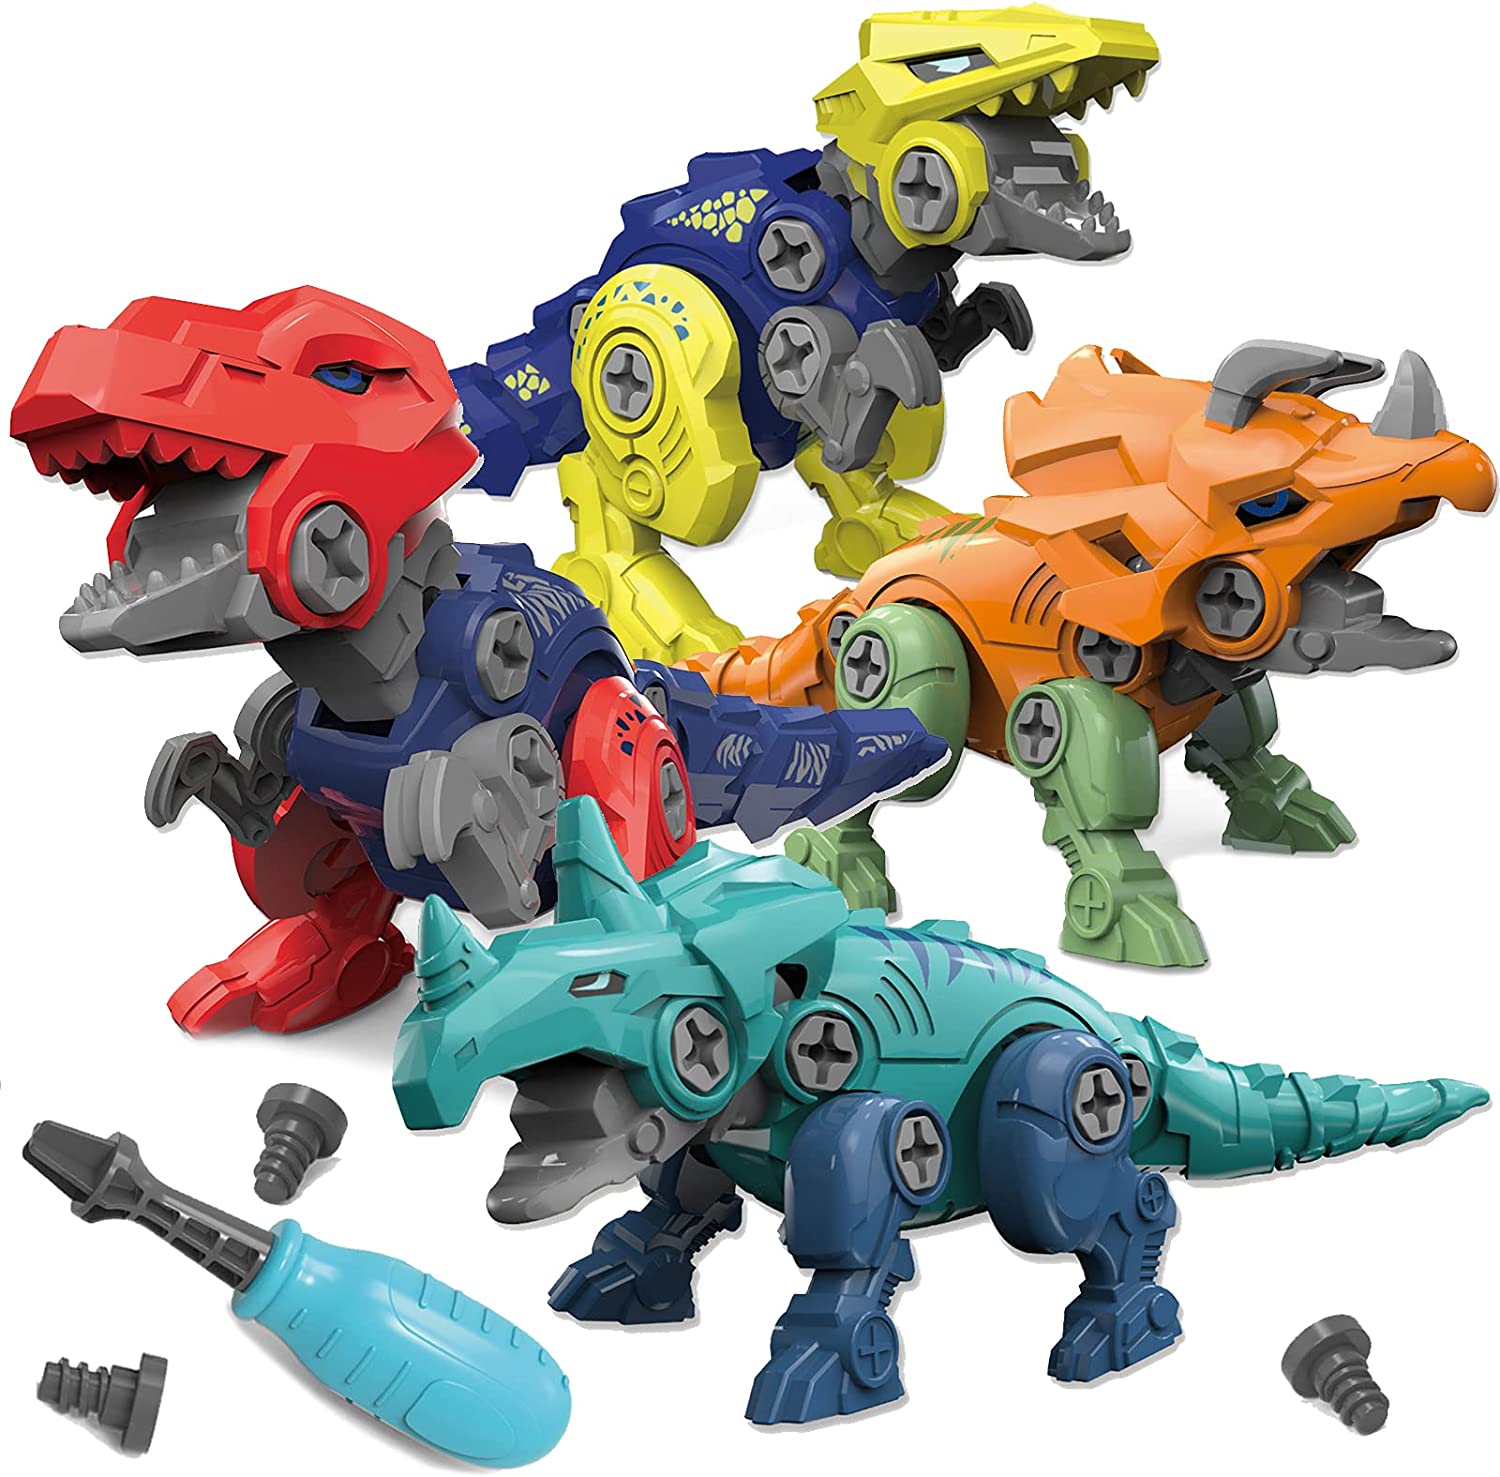 恐竜の組み立てるおもちゃ 恐竜おもちゃ 4PCS 組み立ておもちゃ DIY 立体 恐竜パズル ネジ ねじ回し 手先訓練 大工さん 工具おもちゃ ティラノサウルス トリケラトプス 男の子 クリスマス プレゼント